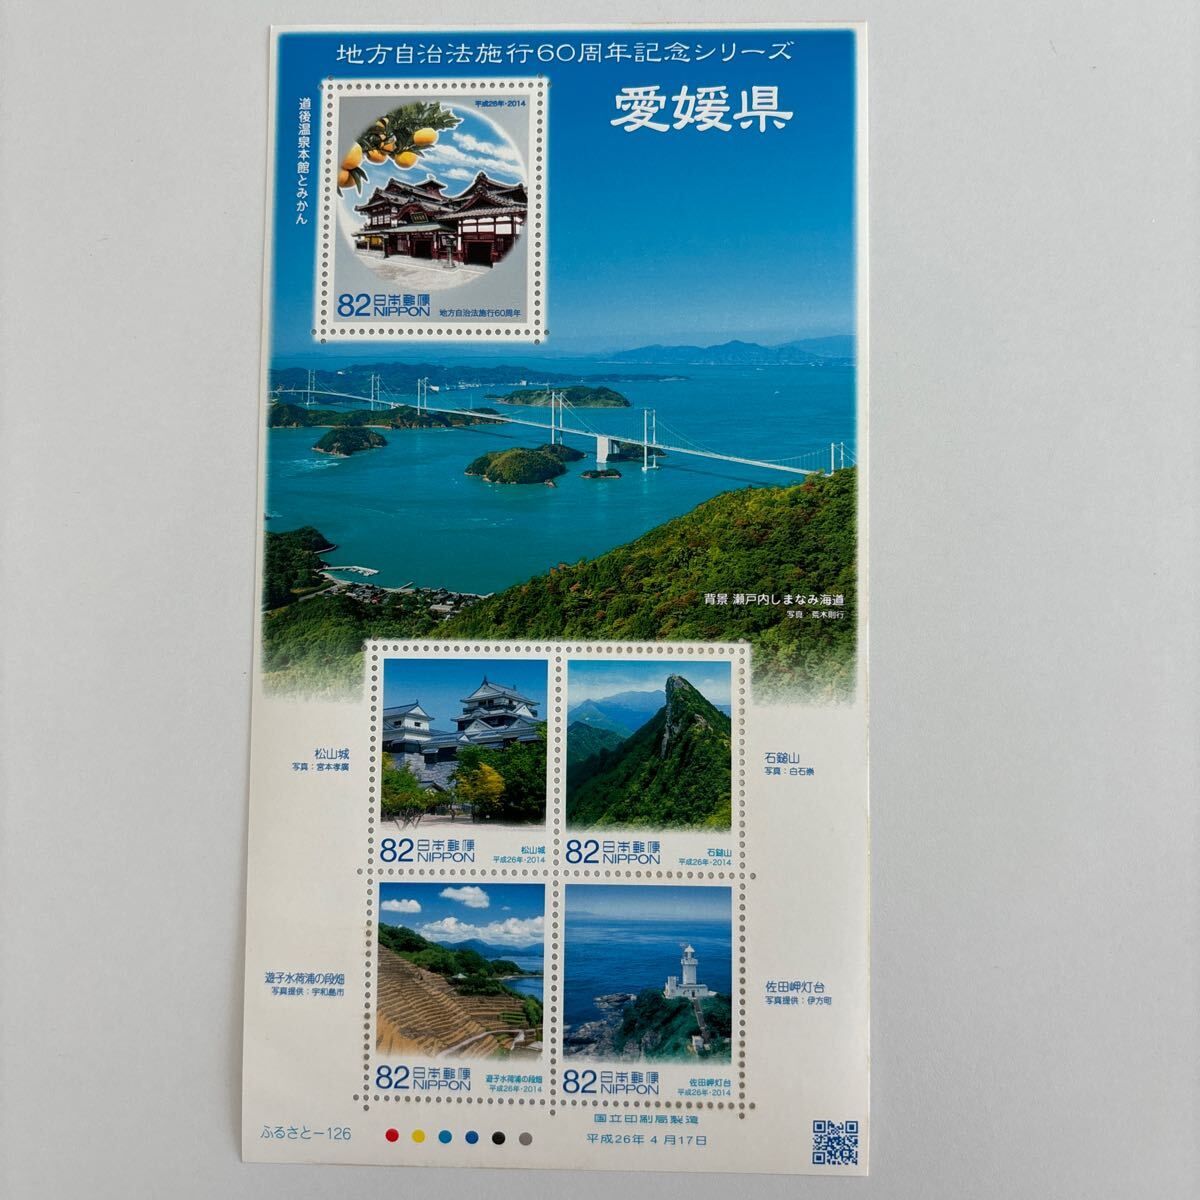 記念切手 地方自治法施行60周年記念シリーズ 愛媛県 未使用切手5枚 美品の画像1